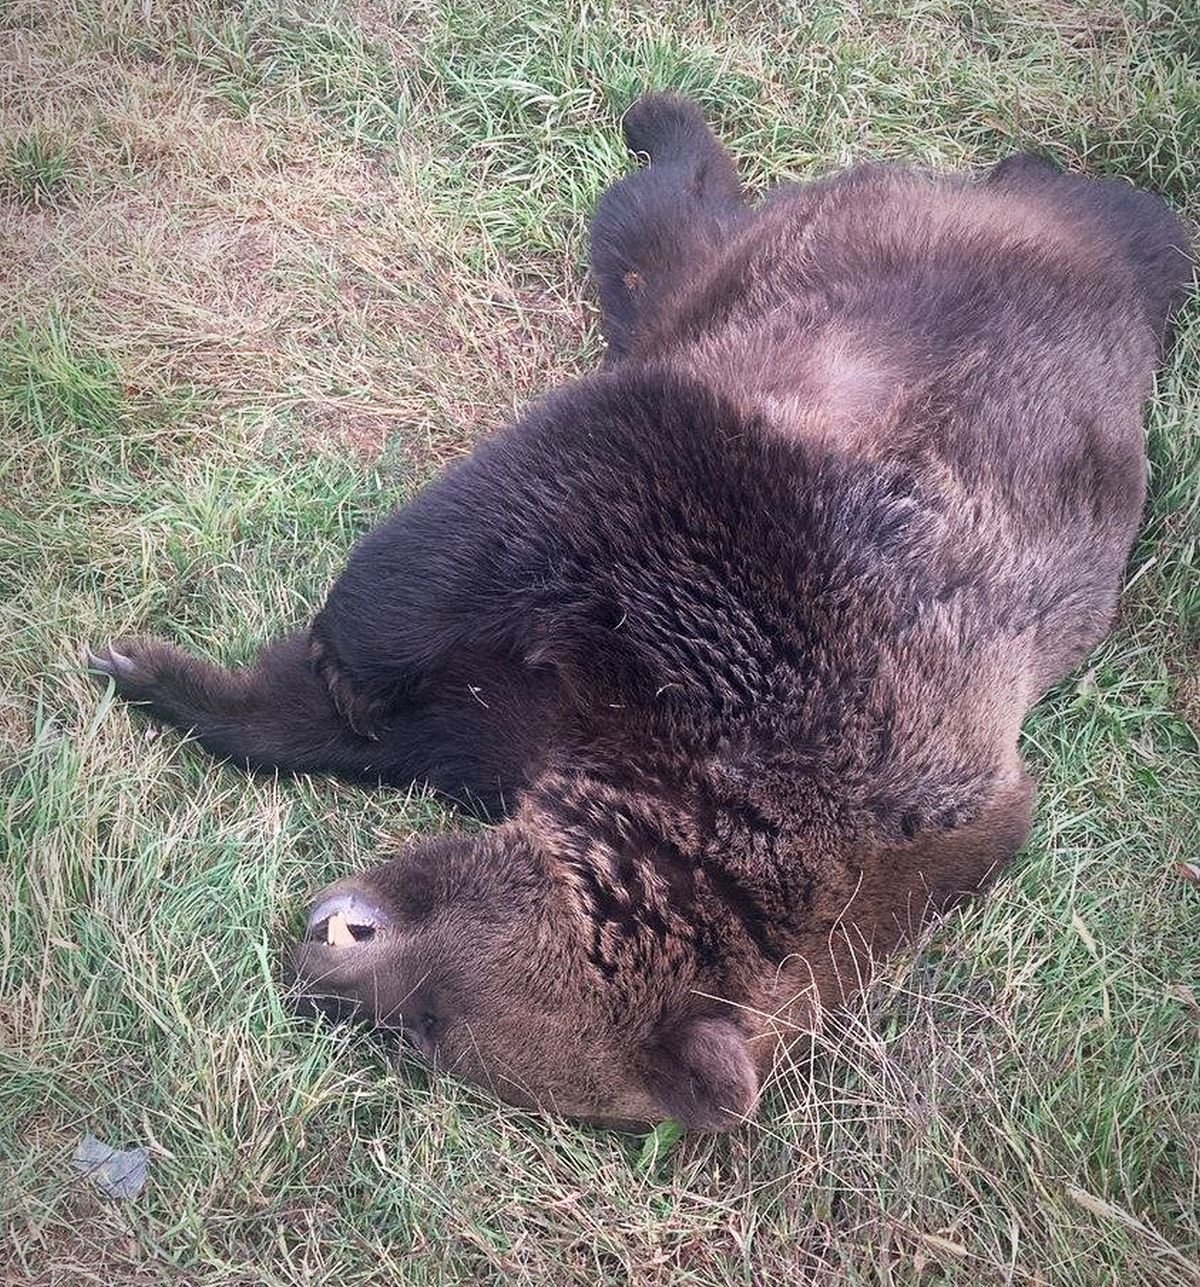 Ütközés egy kifejlett medvével: az állat elpusztult, az autót el kellett vontatni